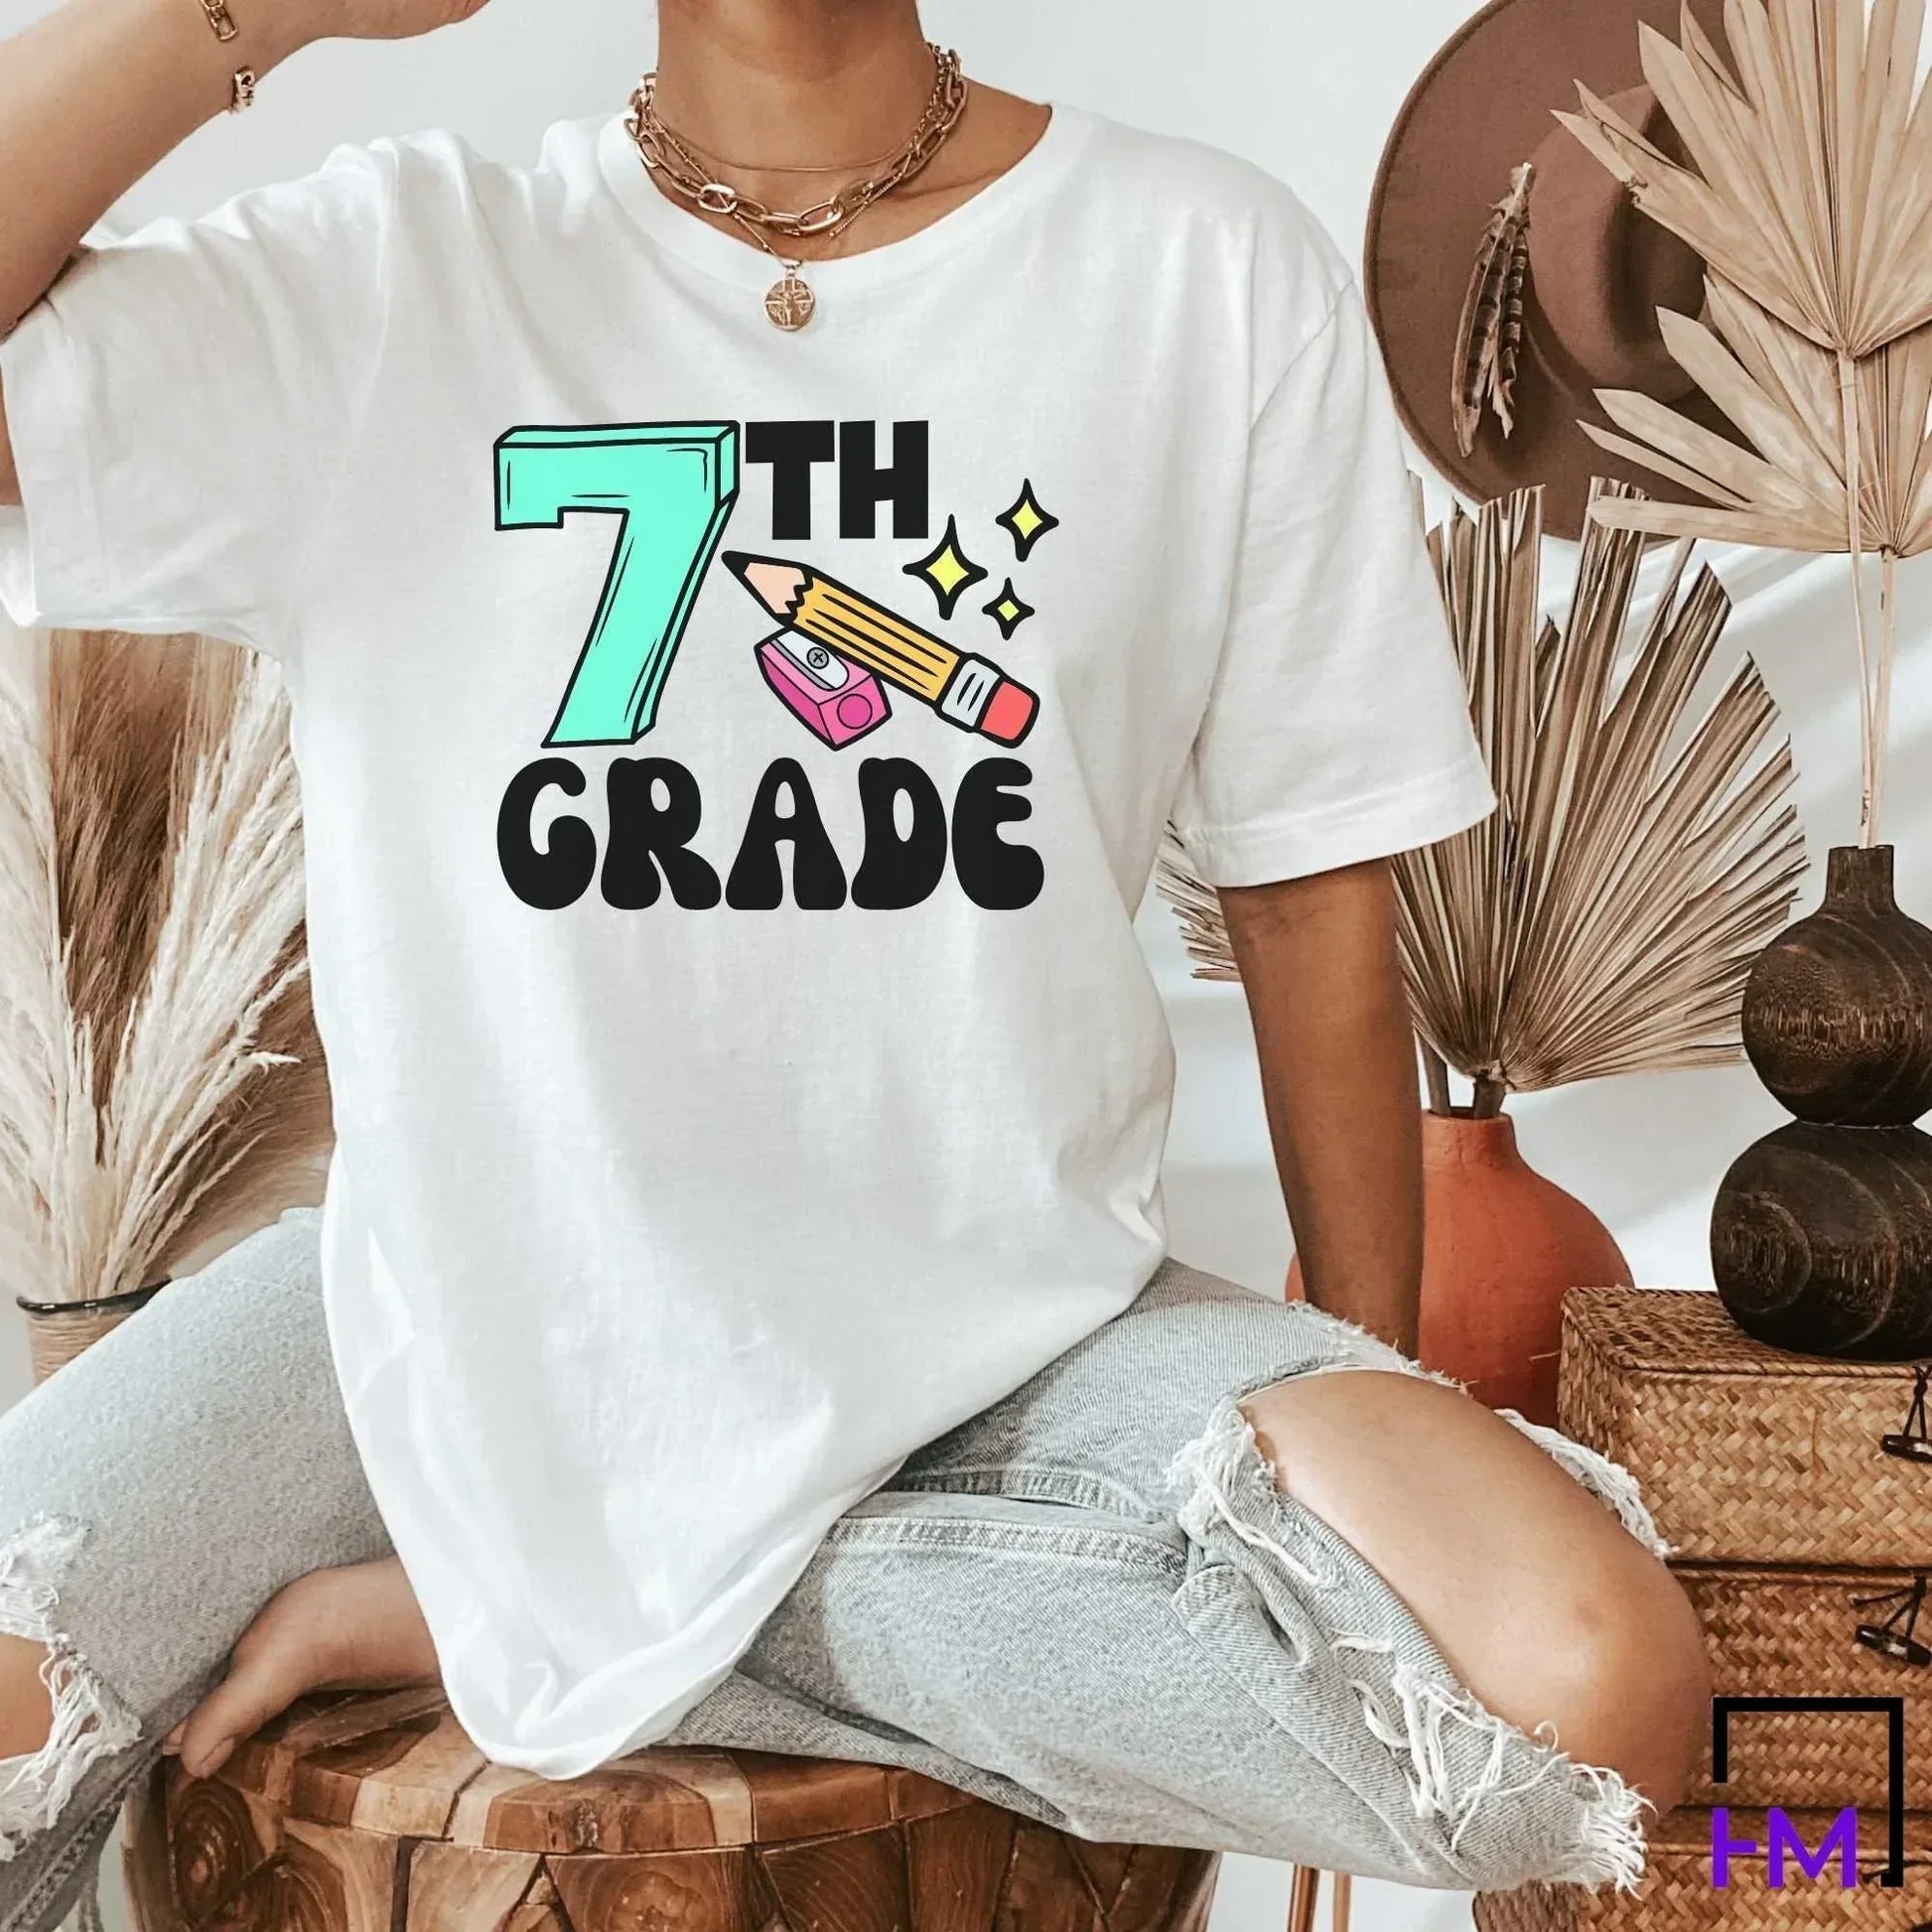 7th Grade Teacher Shirt, Great for New Teacher, Teacher Teams & Appreciation Gifts